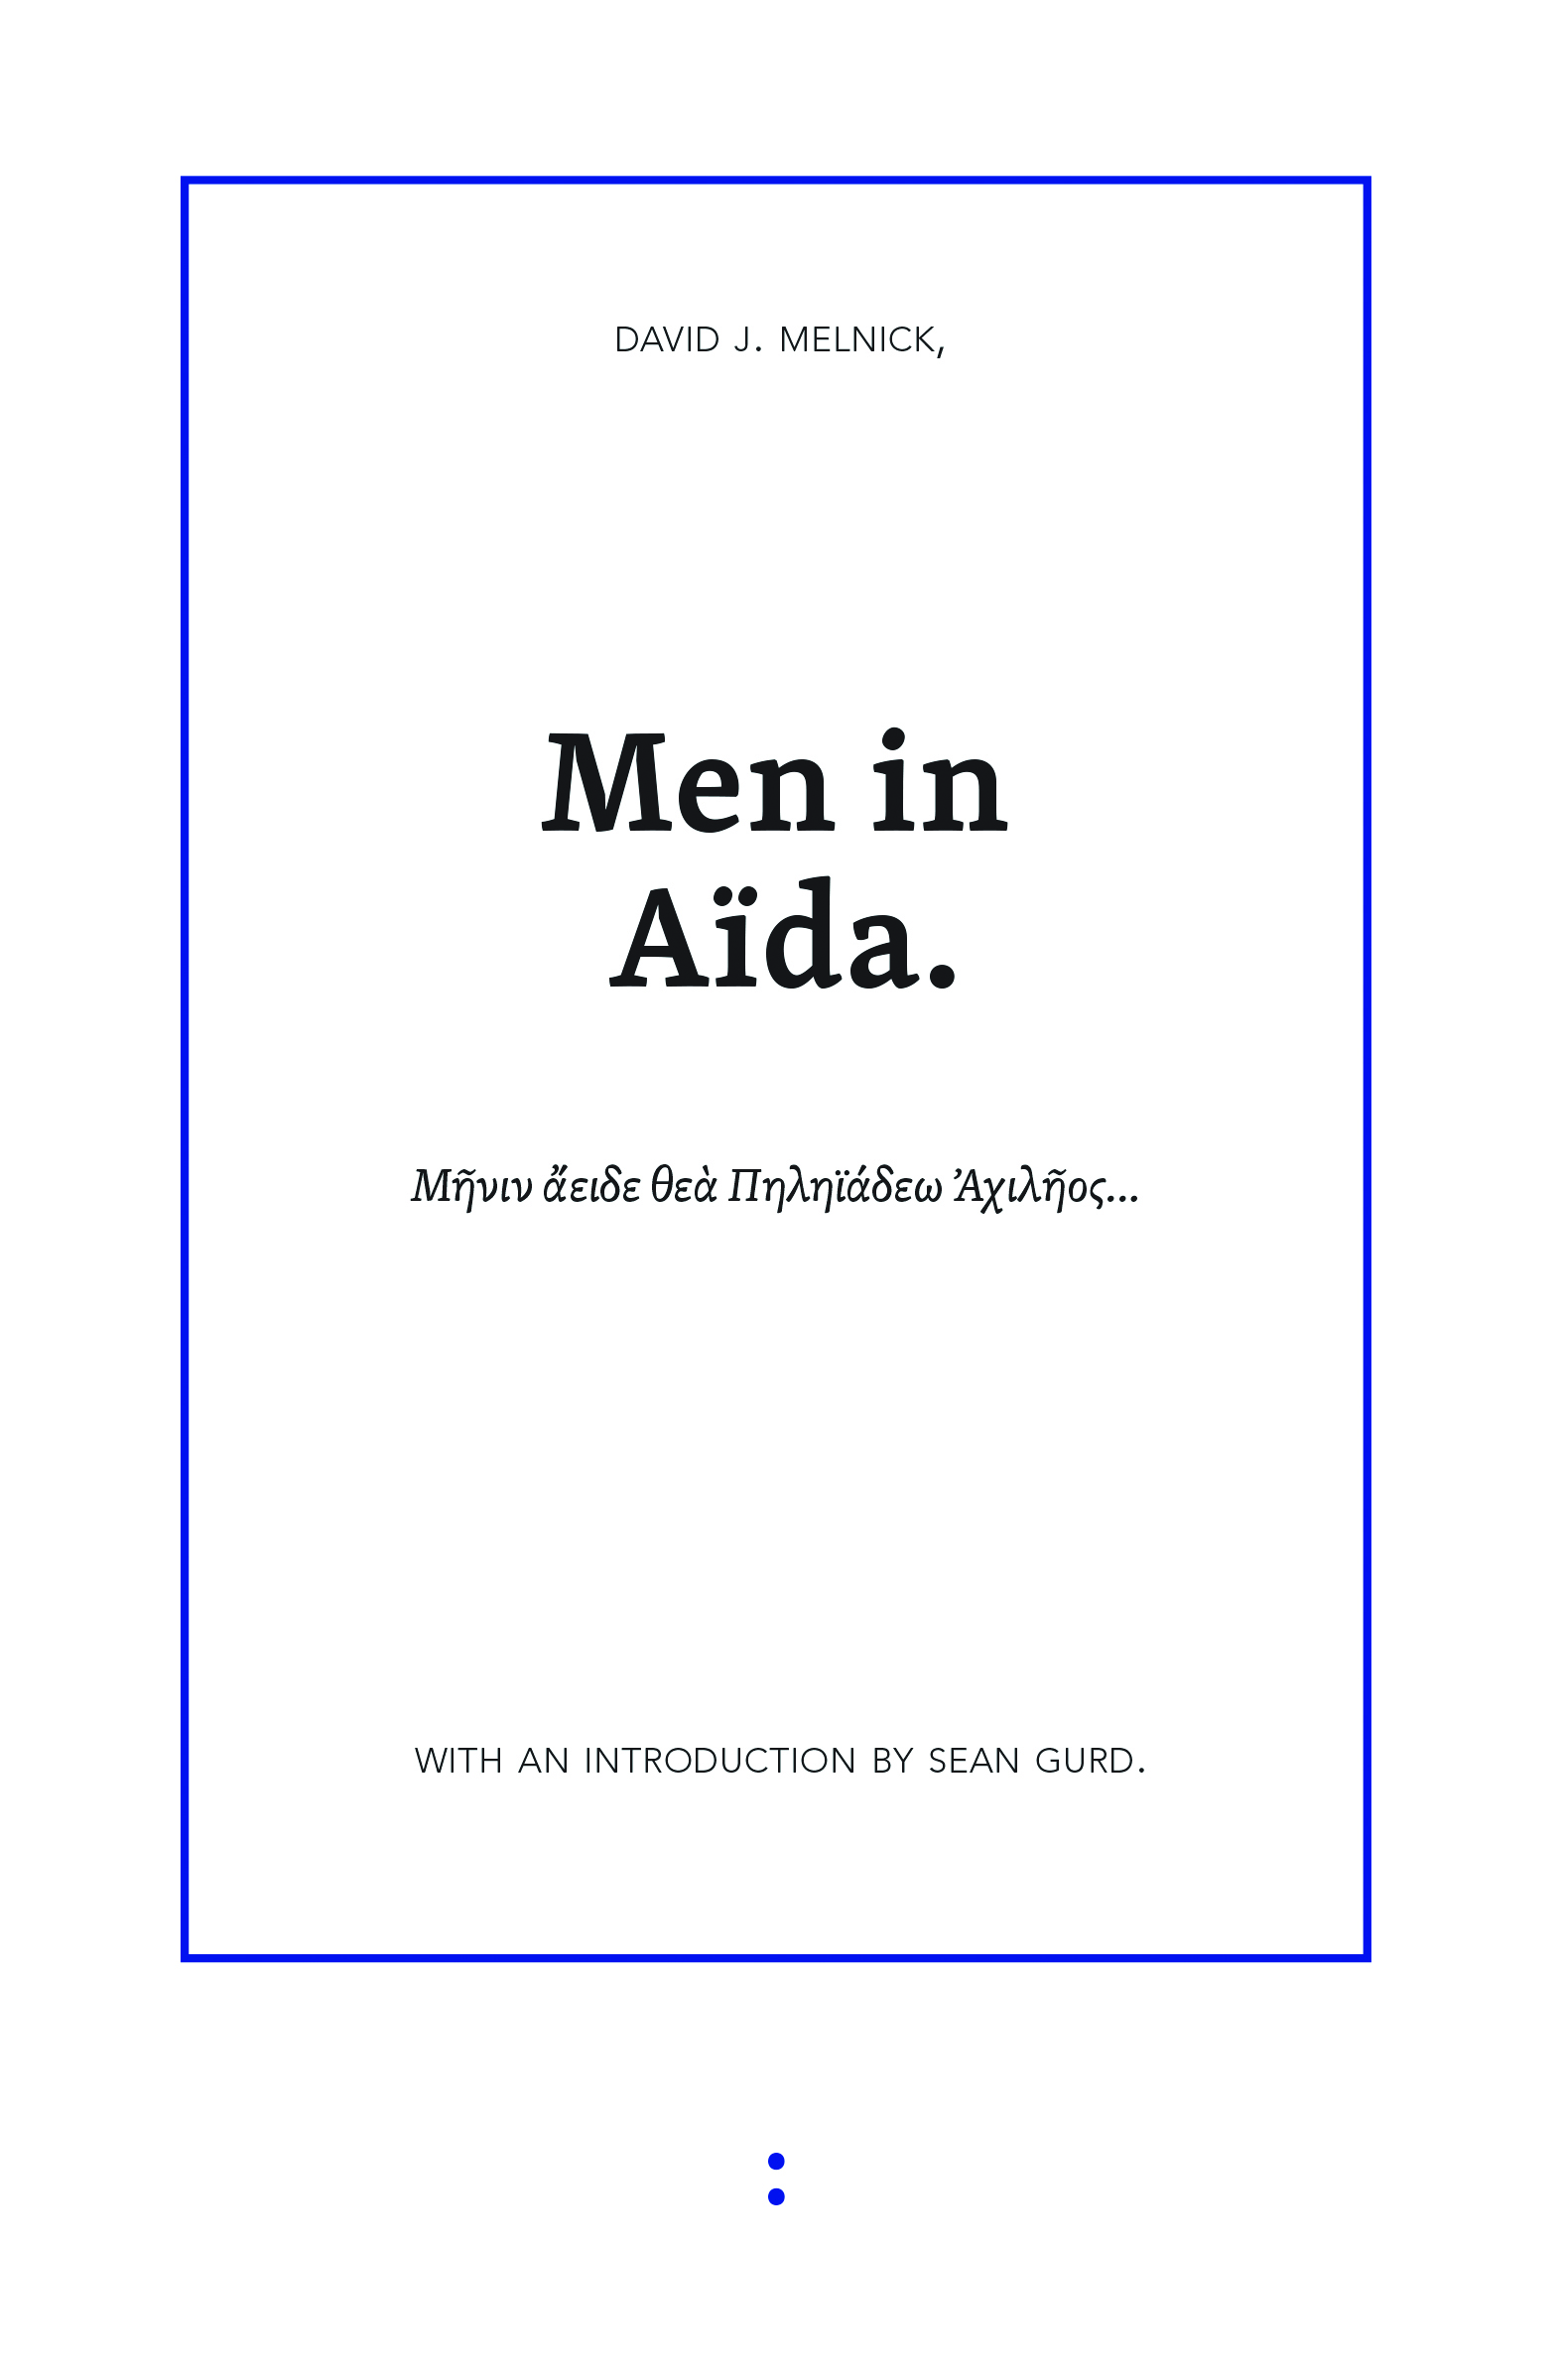 Men in Aïda (punctum books, 2014)